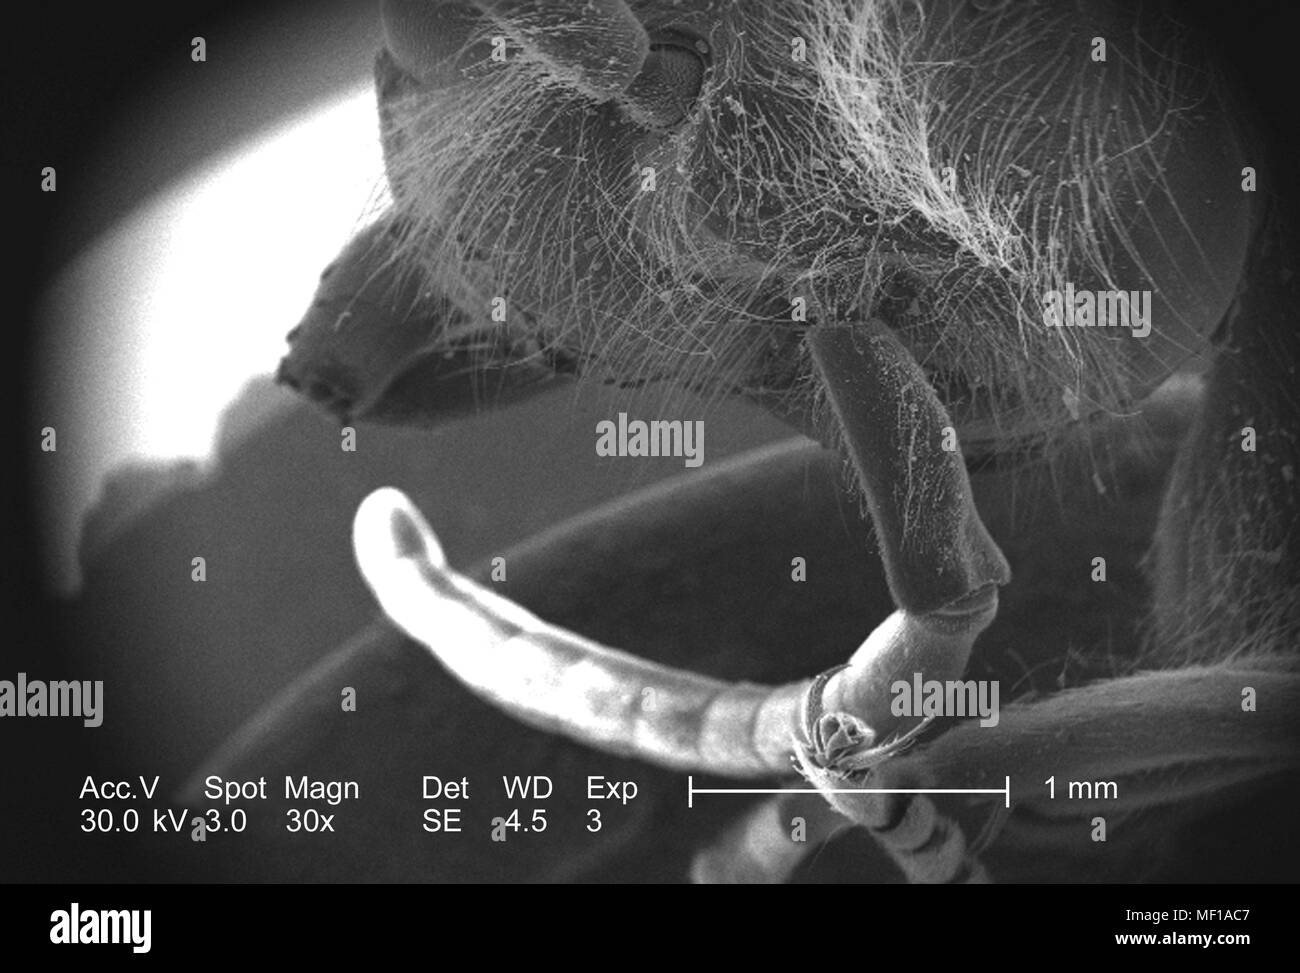 Dettagli morfologiche di un misterioso hymenopteran insetti testa e antenna, raffigurato in 30x di scansione ingrandita al microscopio elettronico (SEM) immagine, 2005. Immagine cortesia di centri per il controllo delle malattie (CDC) / Janice Haney Carr. () Foto Stock